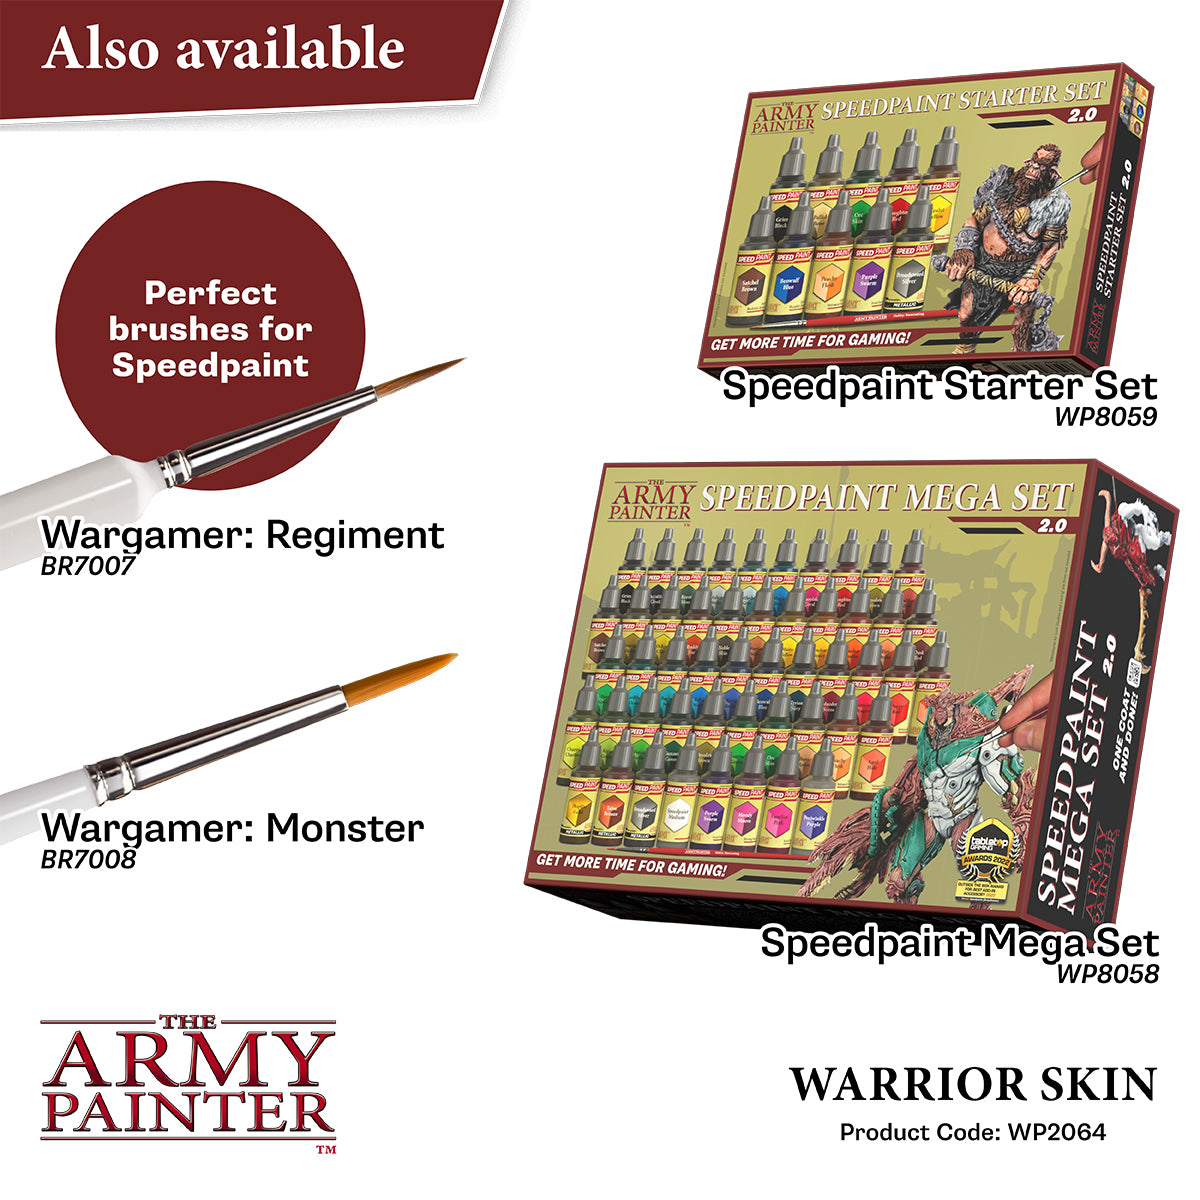 Army Painter: Speedpaint 2.0 - Warrior Skin